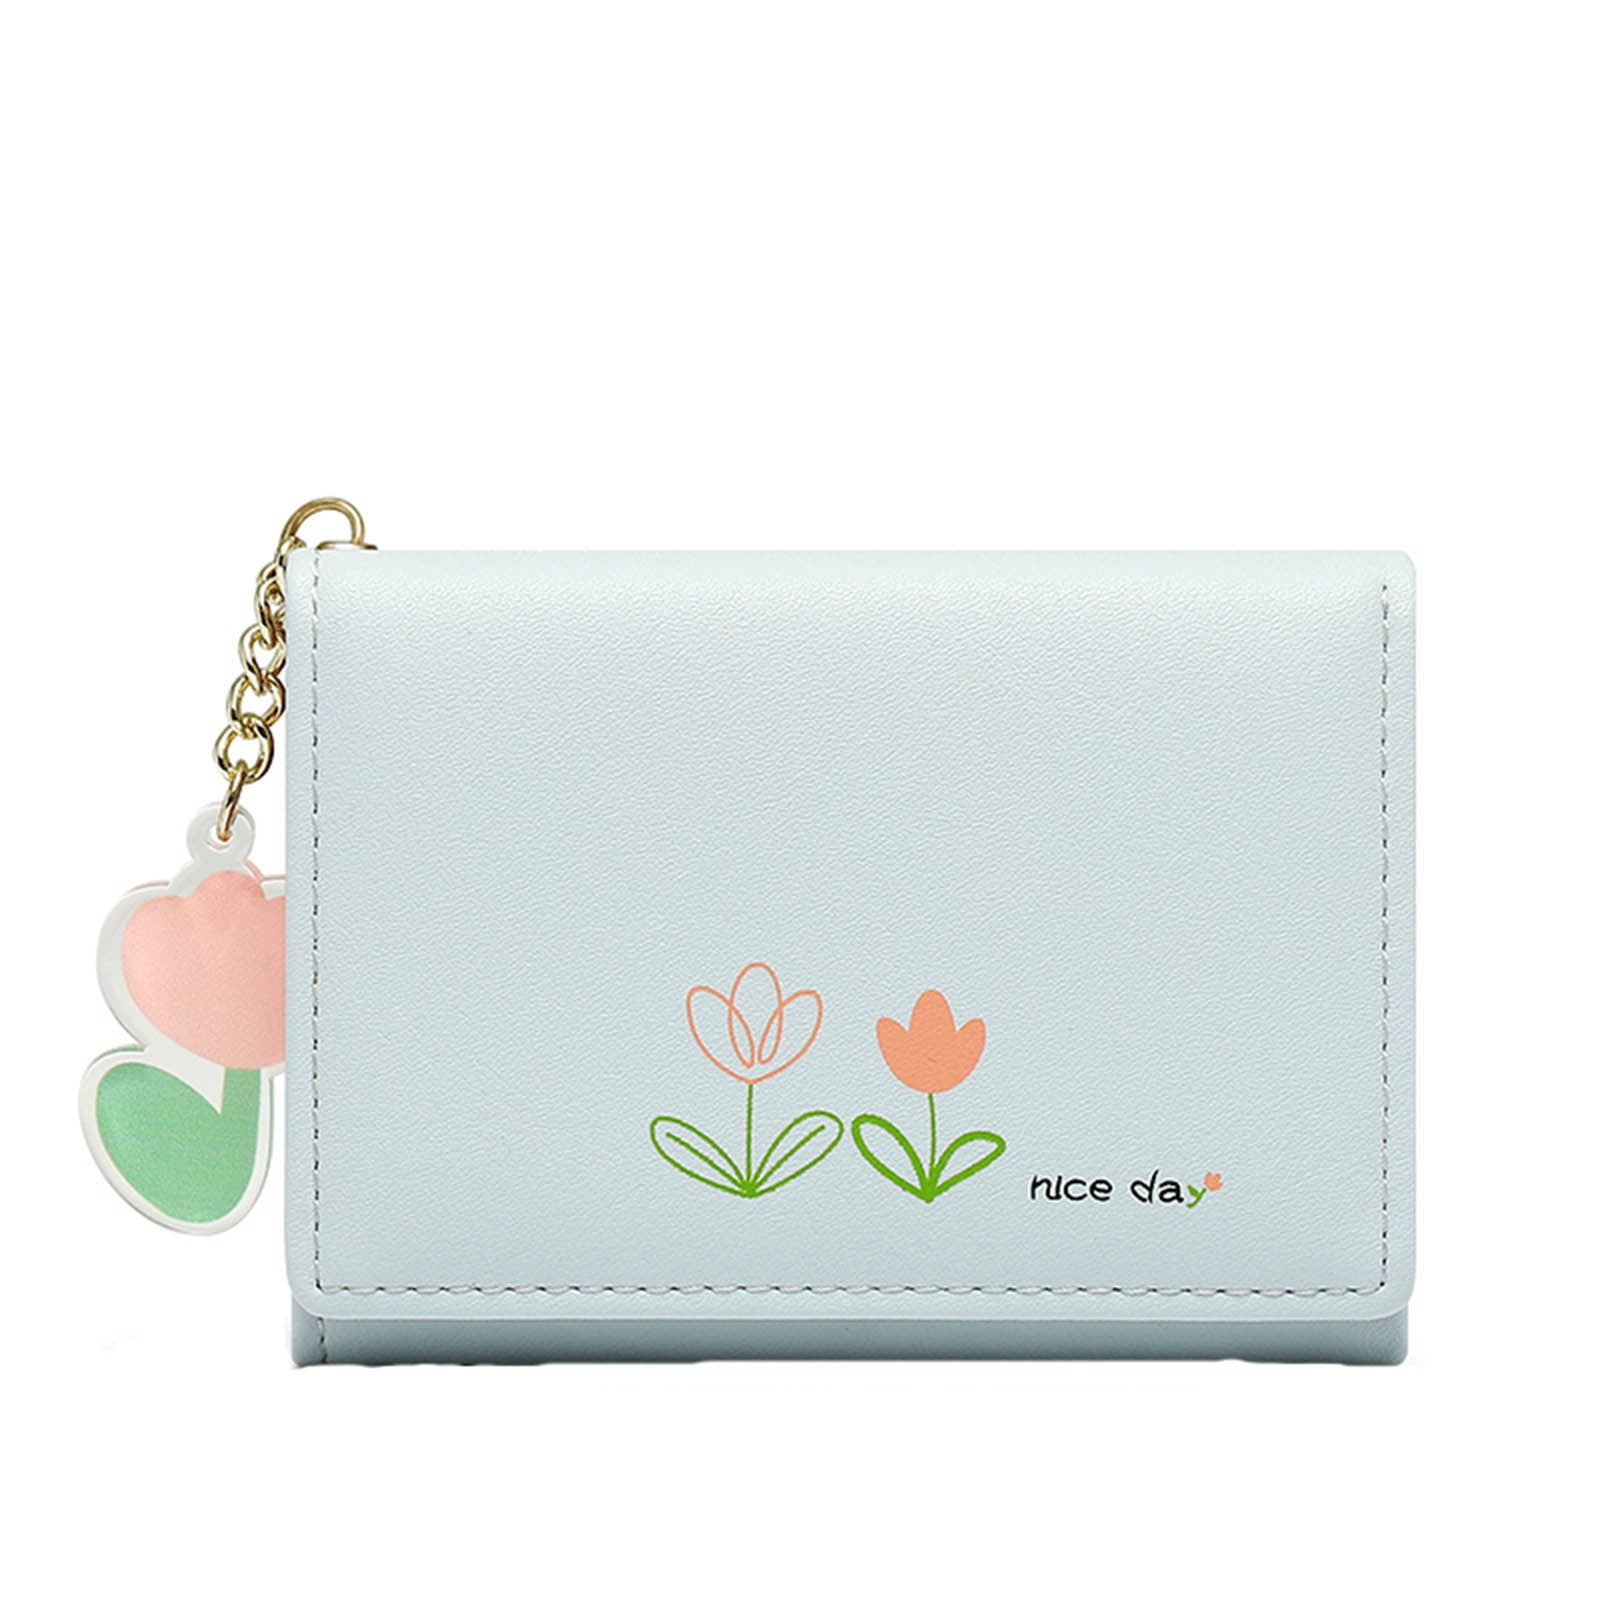 Buy LaFille Beige Women's Fancy Handbag | Ladies Purse at Amazon.in